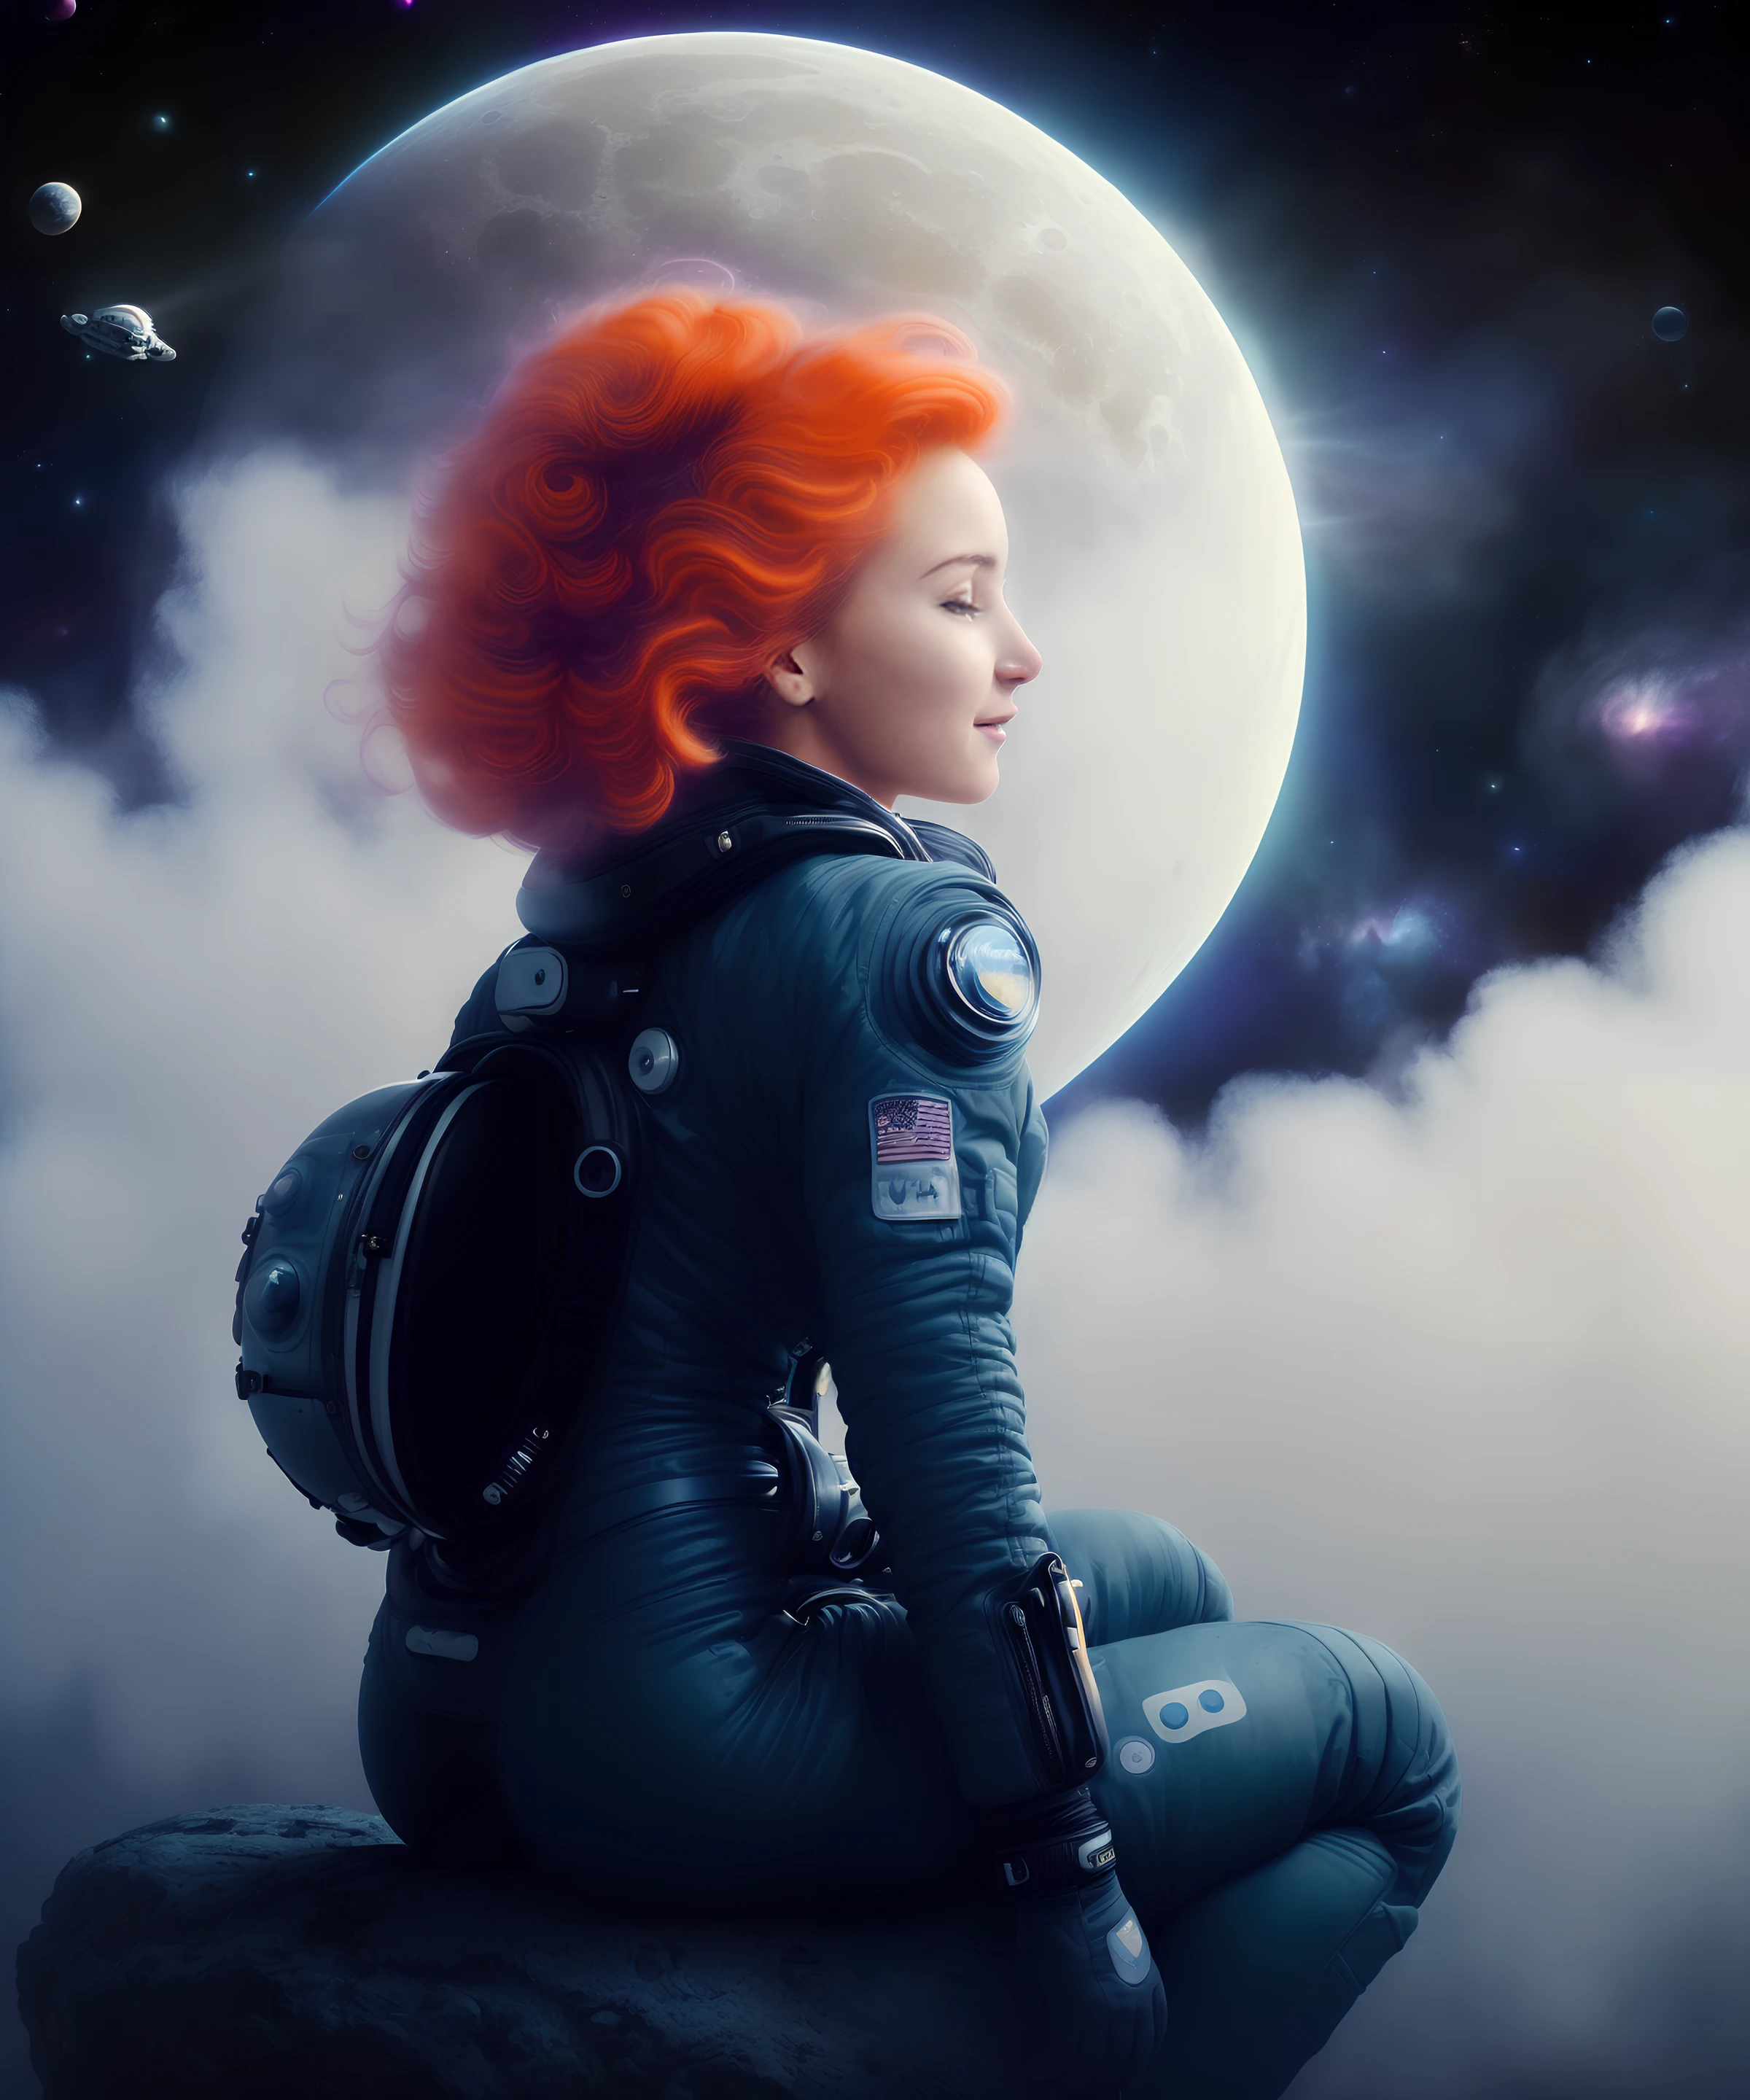 (foto:1.3) de (Ultra detallado:1.5),(Energético:1.2) una mujer europea en un traje espacial,(pelo de punta:1.3) [ pelo negro : jengibre : 17],Cuerpo hermoso,sentado en una pequeña luna,against the backdrop de space,sonrisa humilde. (Atmósfera:1.3), (niebla:1.2),(colores saturados:1.2),(viñeta negra:1.1), fondo más detalles,(por el artista WLOP:1.4),muy detallado,(colores pasteles:1.4)